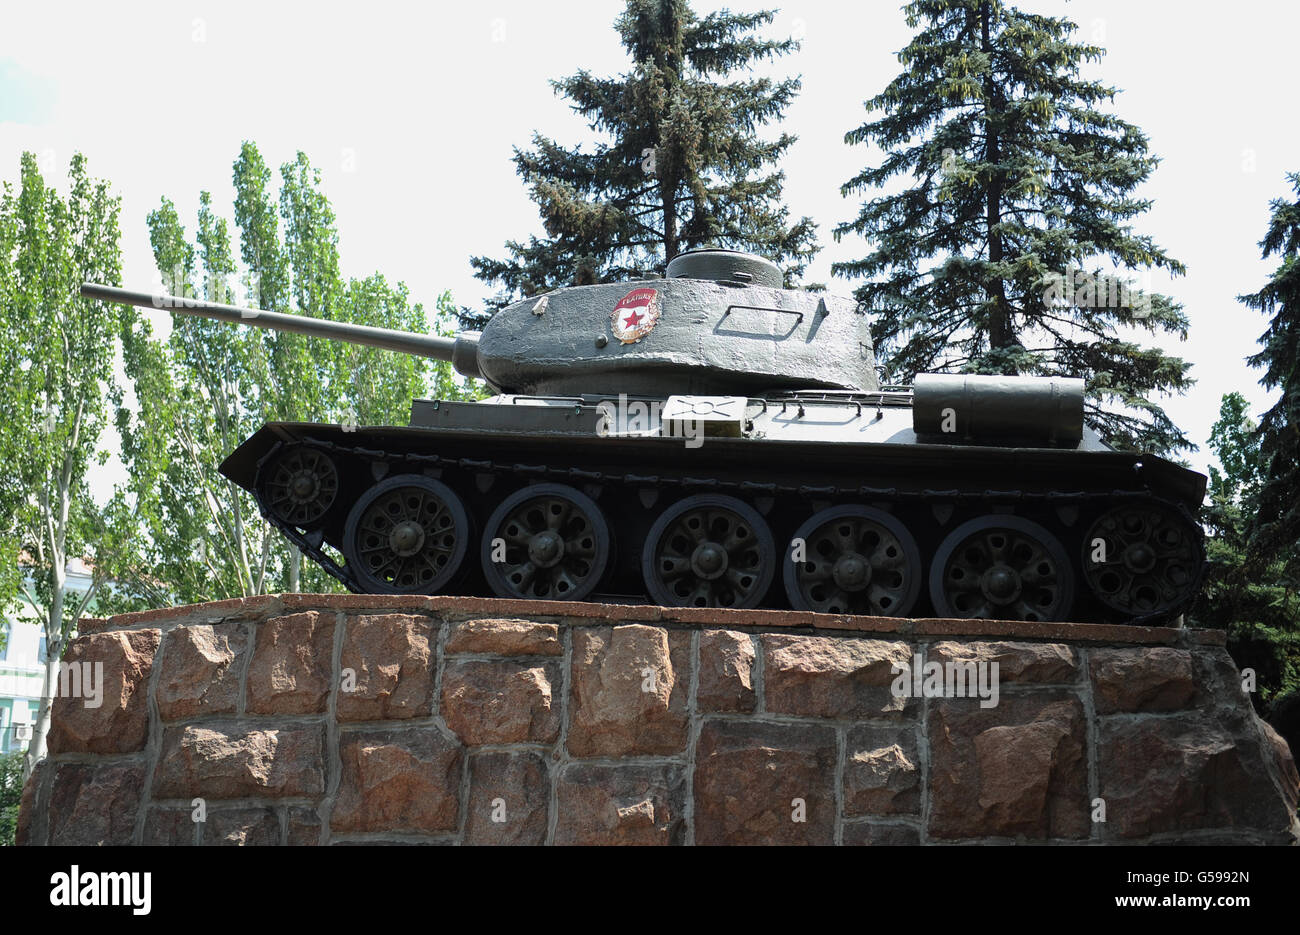 Reisestaken - Donezk - Ukraine. Ein sowjetischer Panzer, der in der Artera-Straße, Donezk, Ukraine, ausgestellt ist. Stockfoto